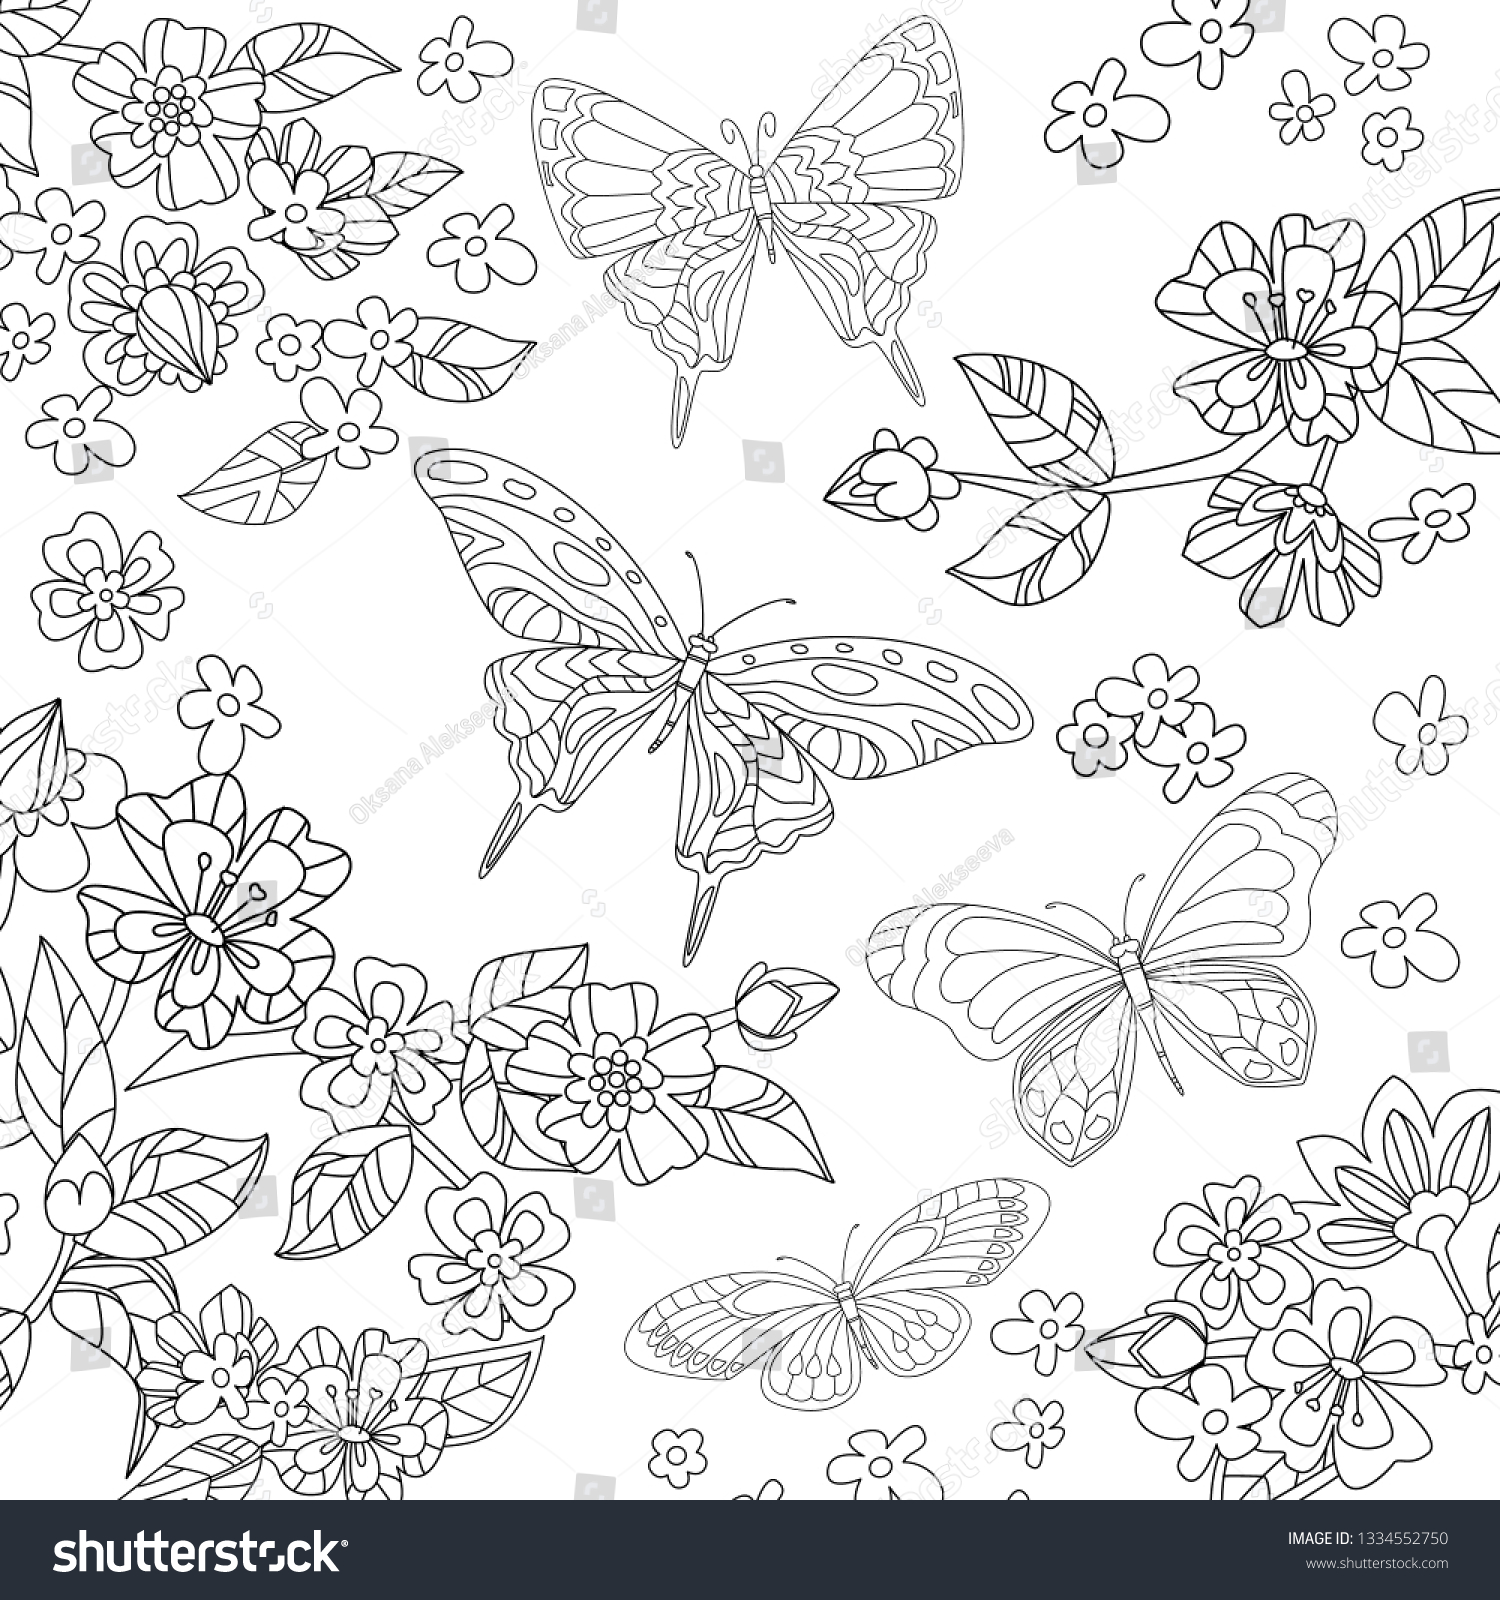 Flying Butterflies Garden Flowering Cherry Your Stock Vector (Royalty ...